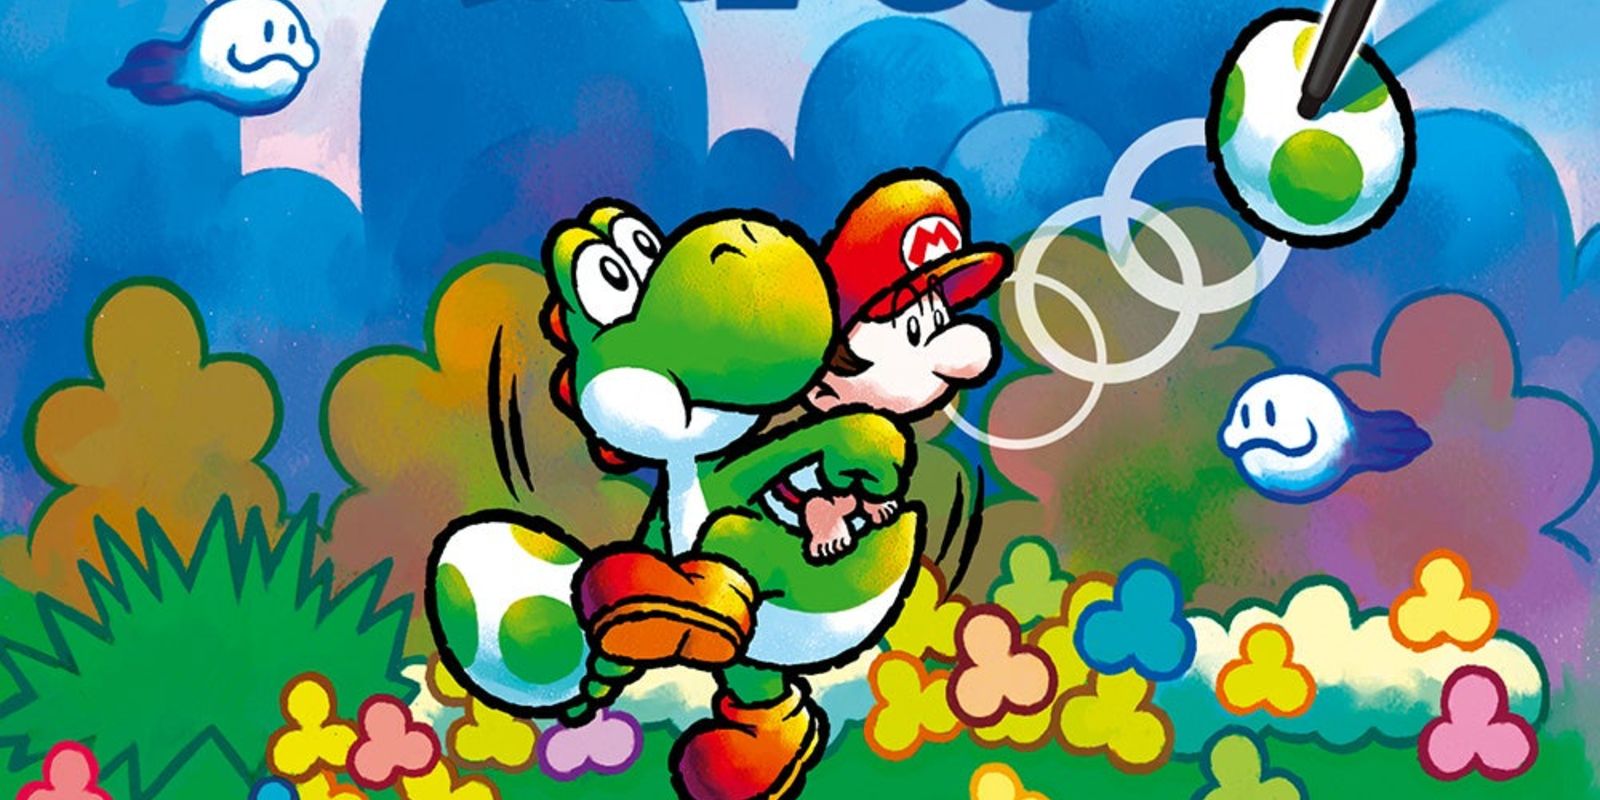 Nintendo 9. Yoshi Touch & go. Yoshi has Drowning. Happy Yoshi Day twitter.